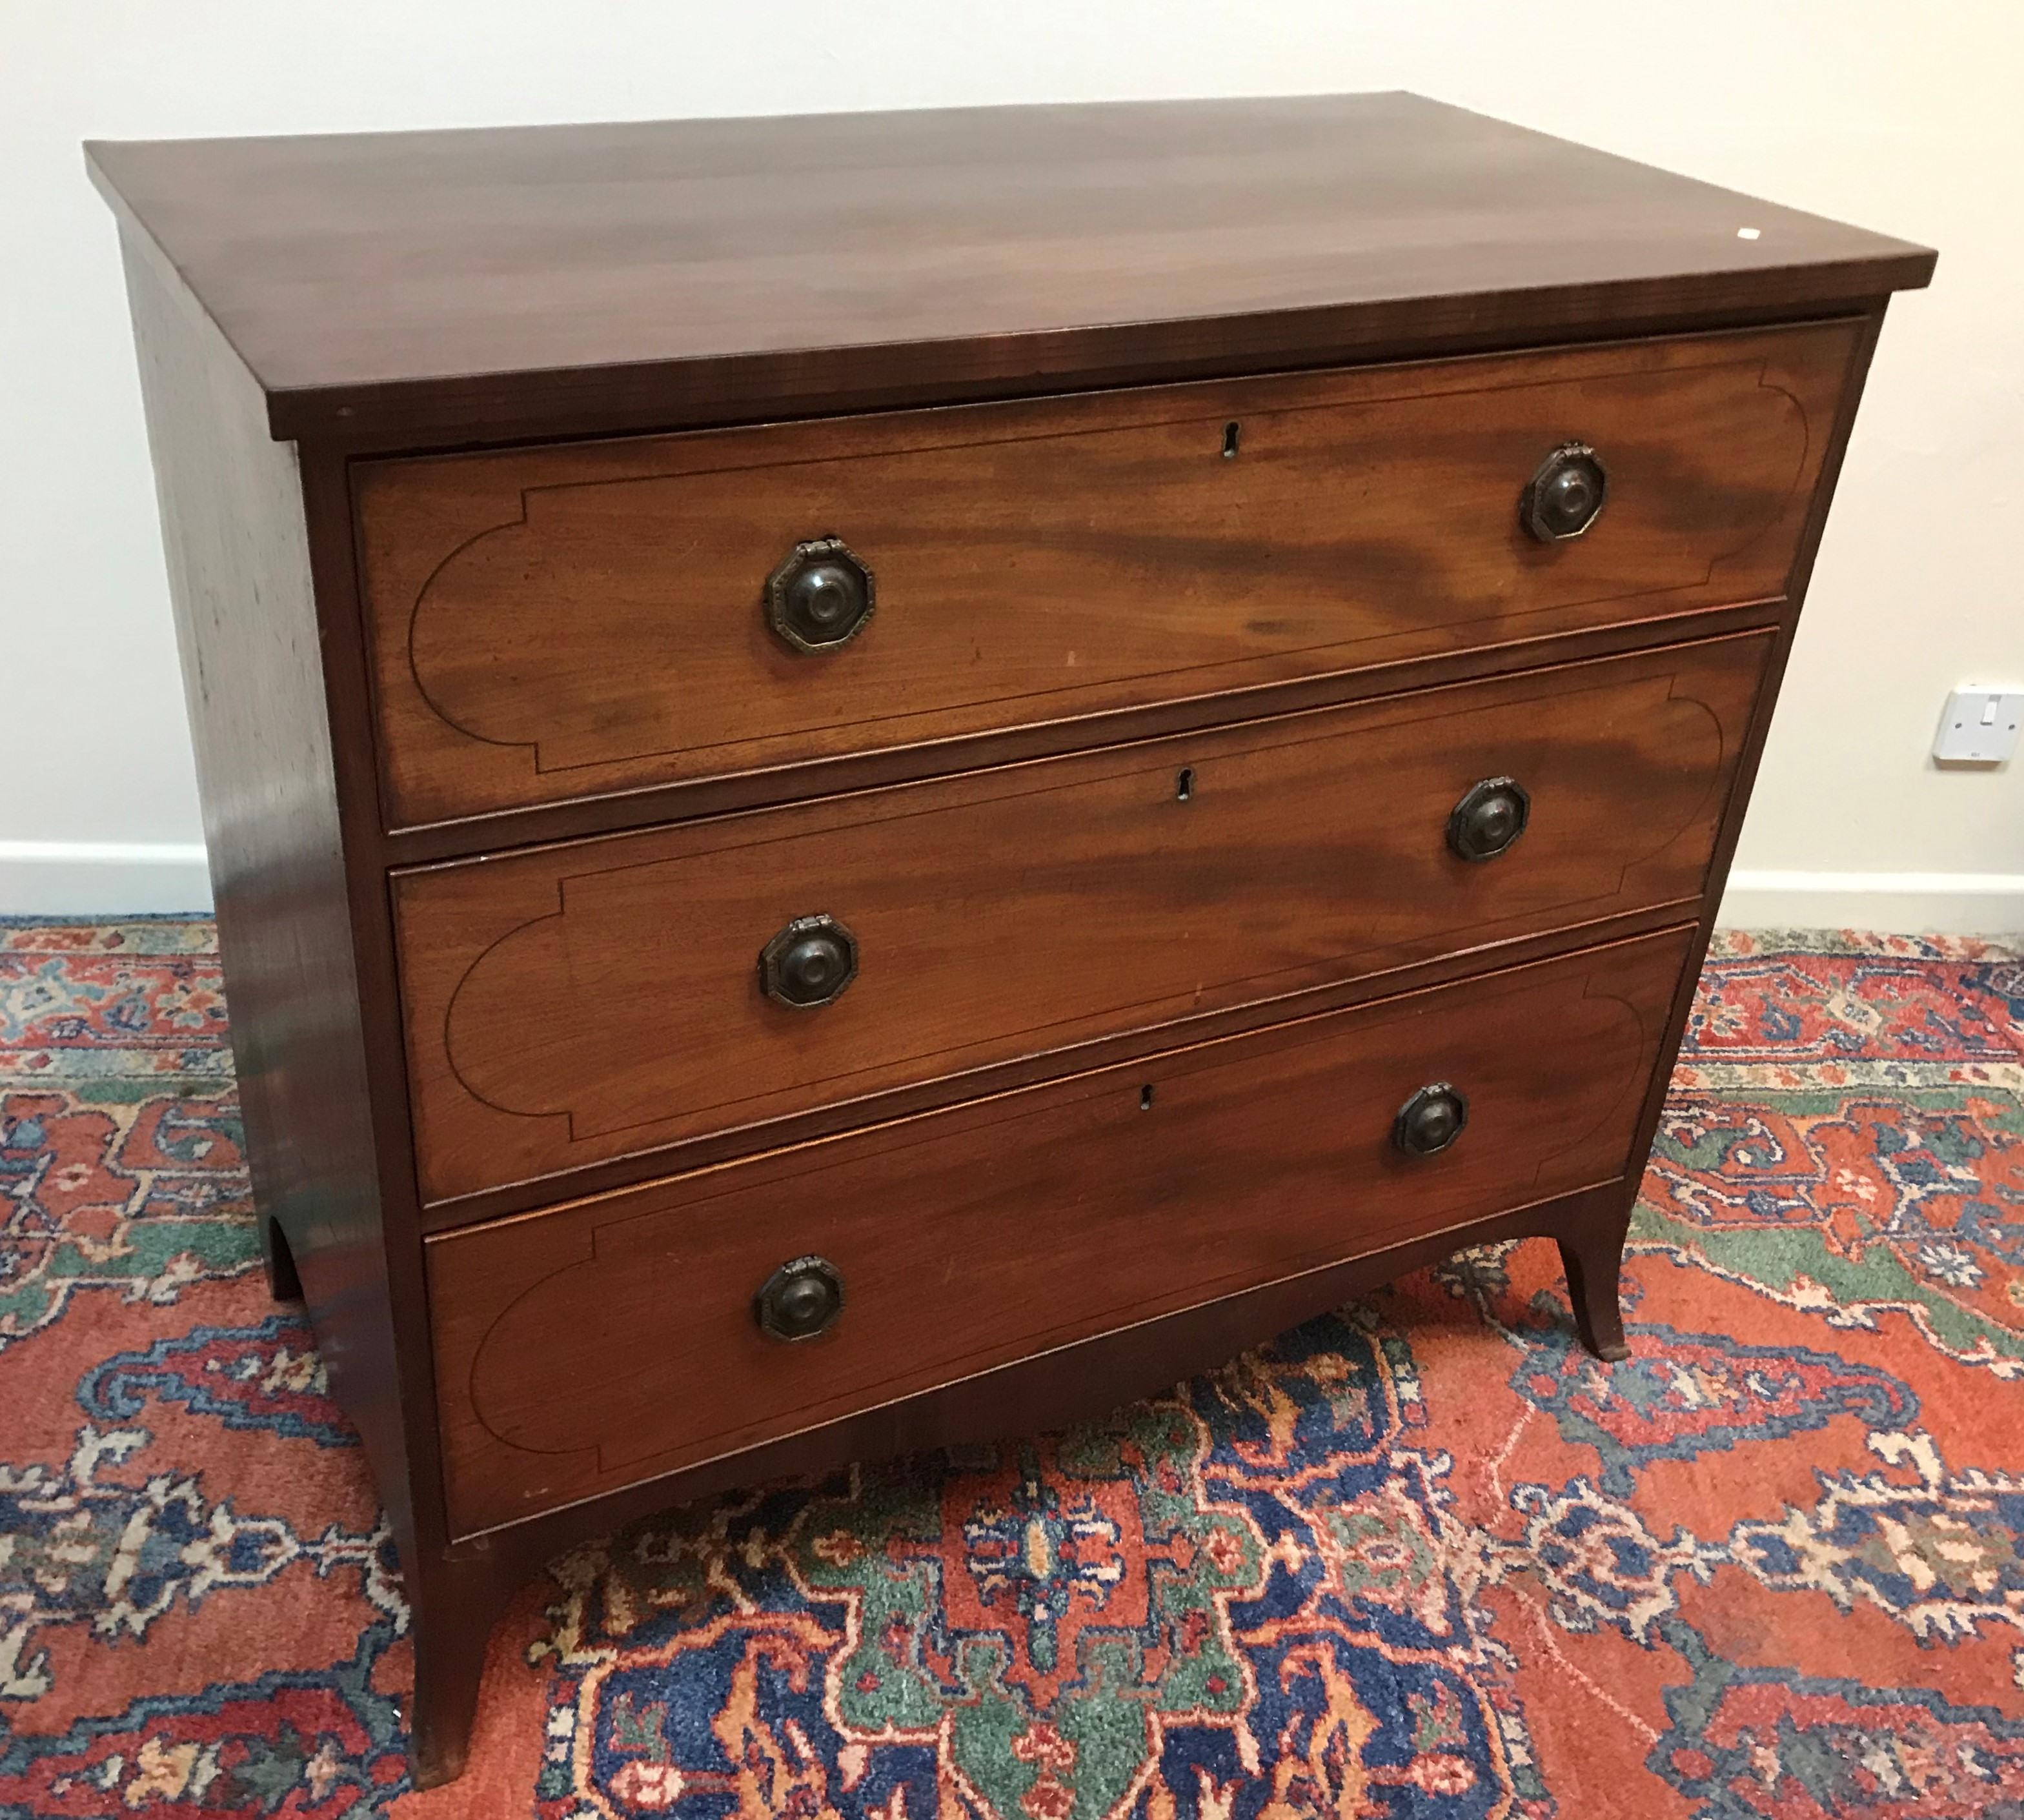 A Regency mahogany chest,